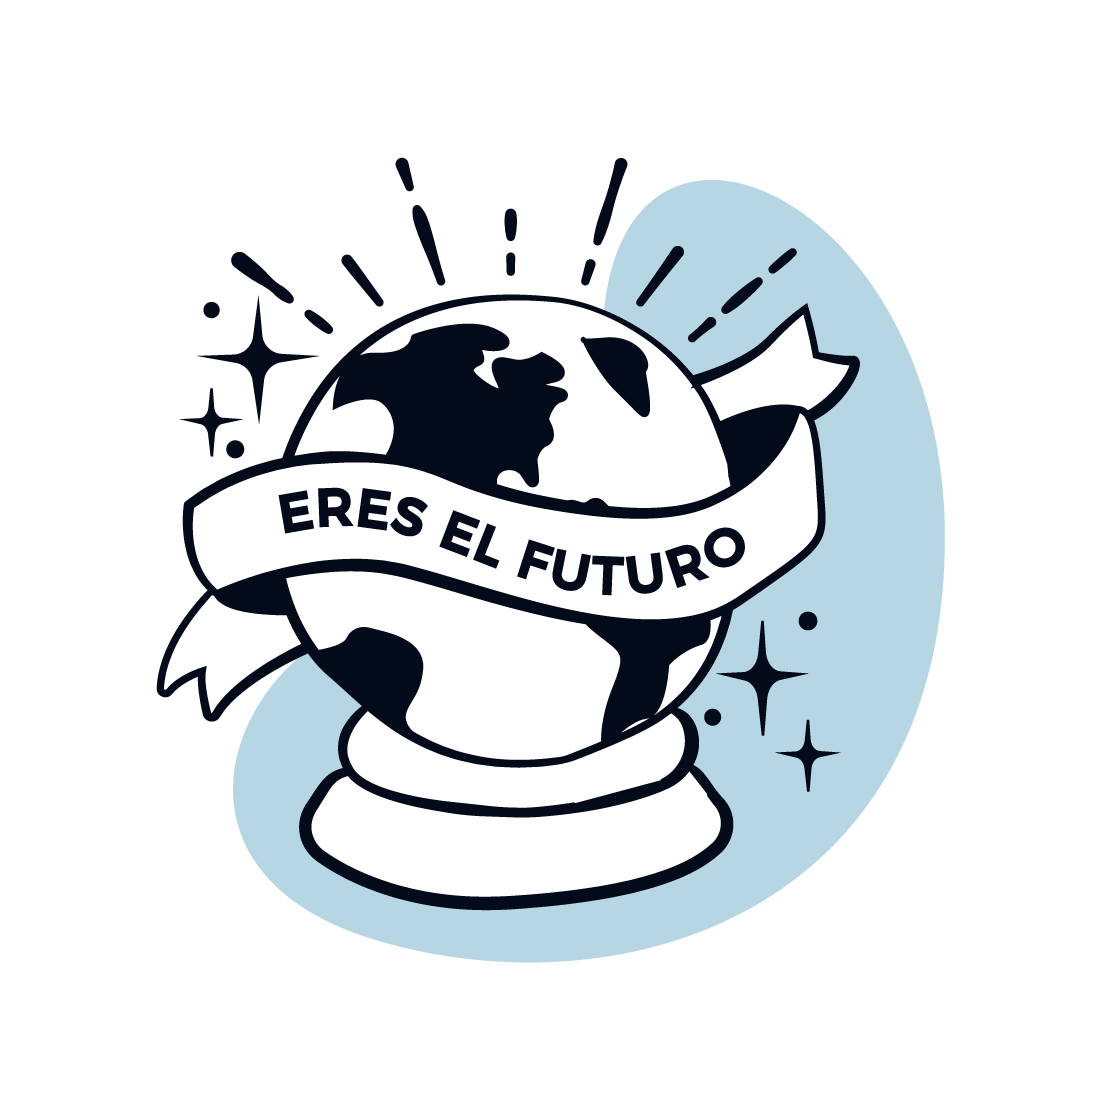 Icono caricaturizado del planeta con una cinta a su alrededor con las palabras "eres el futuro"